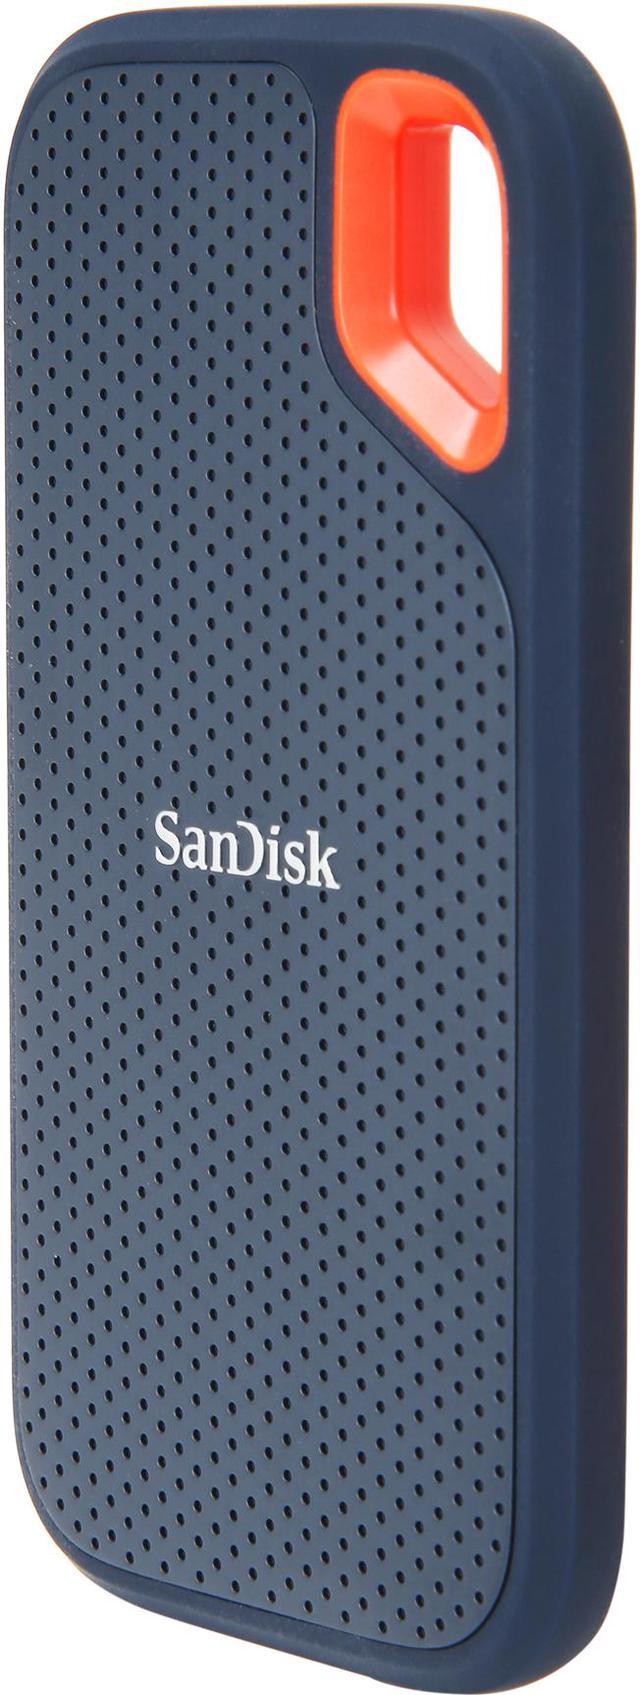 SanDisk Extreme 500GB USB 3.1 Portable SSD Newegg.com